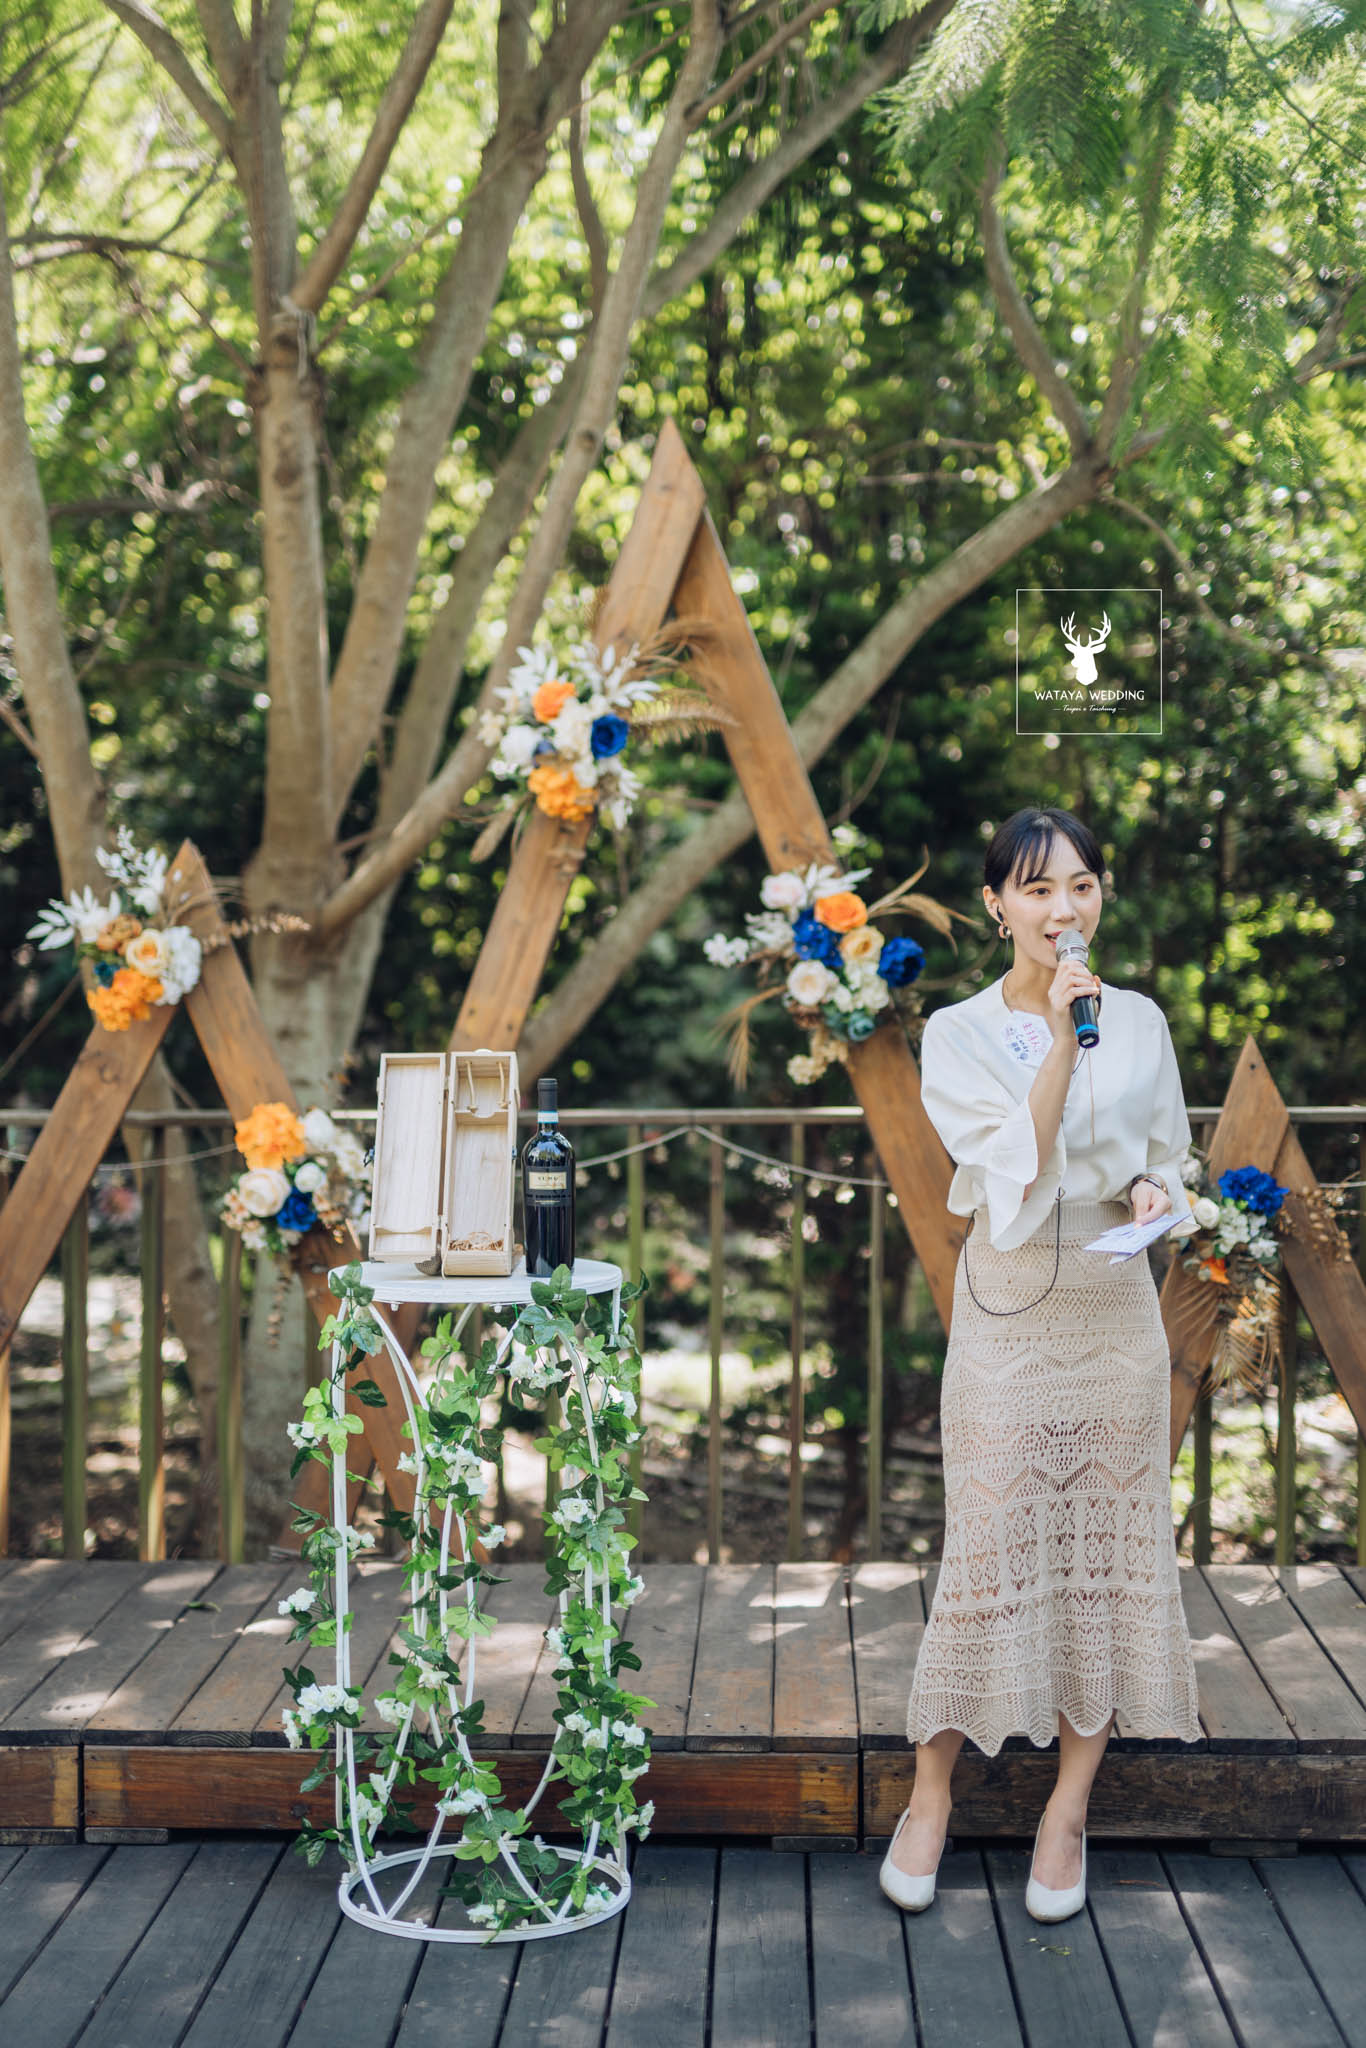 台中綿谷婚禮平面攝影 (28)